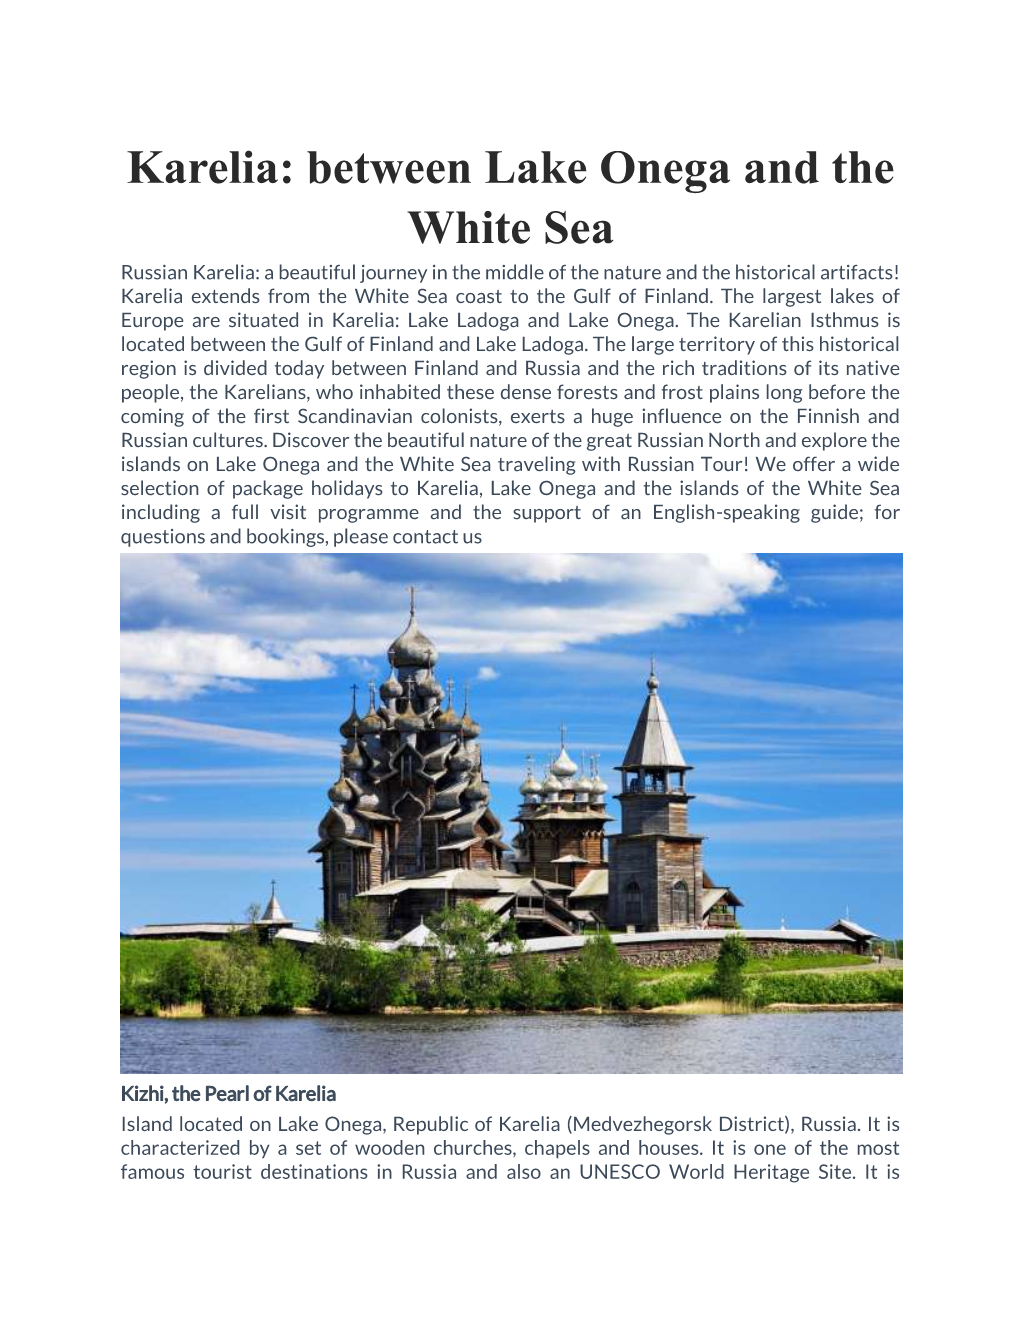 Karelia: Between Lake Onega and the White